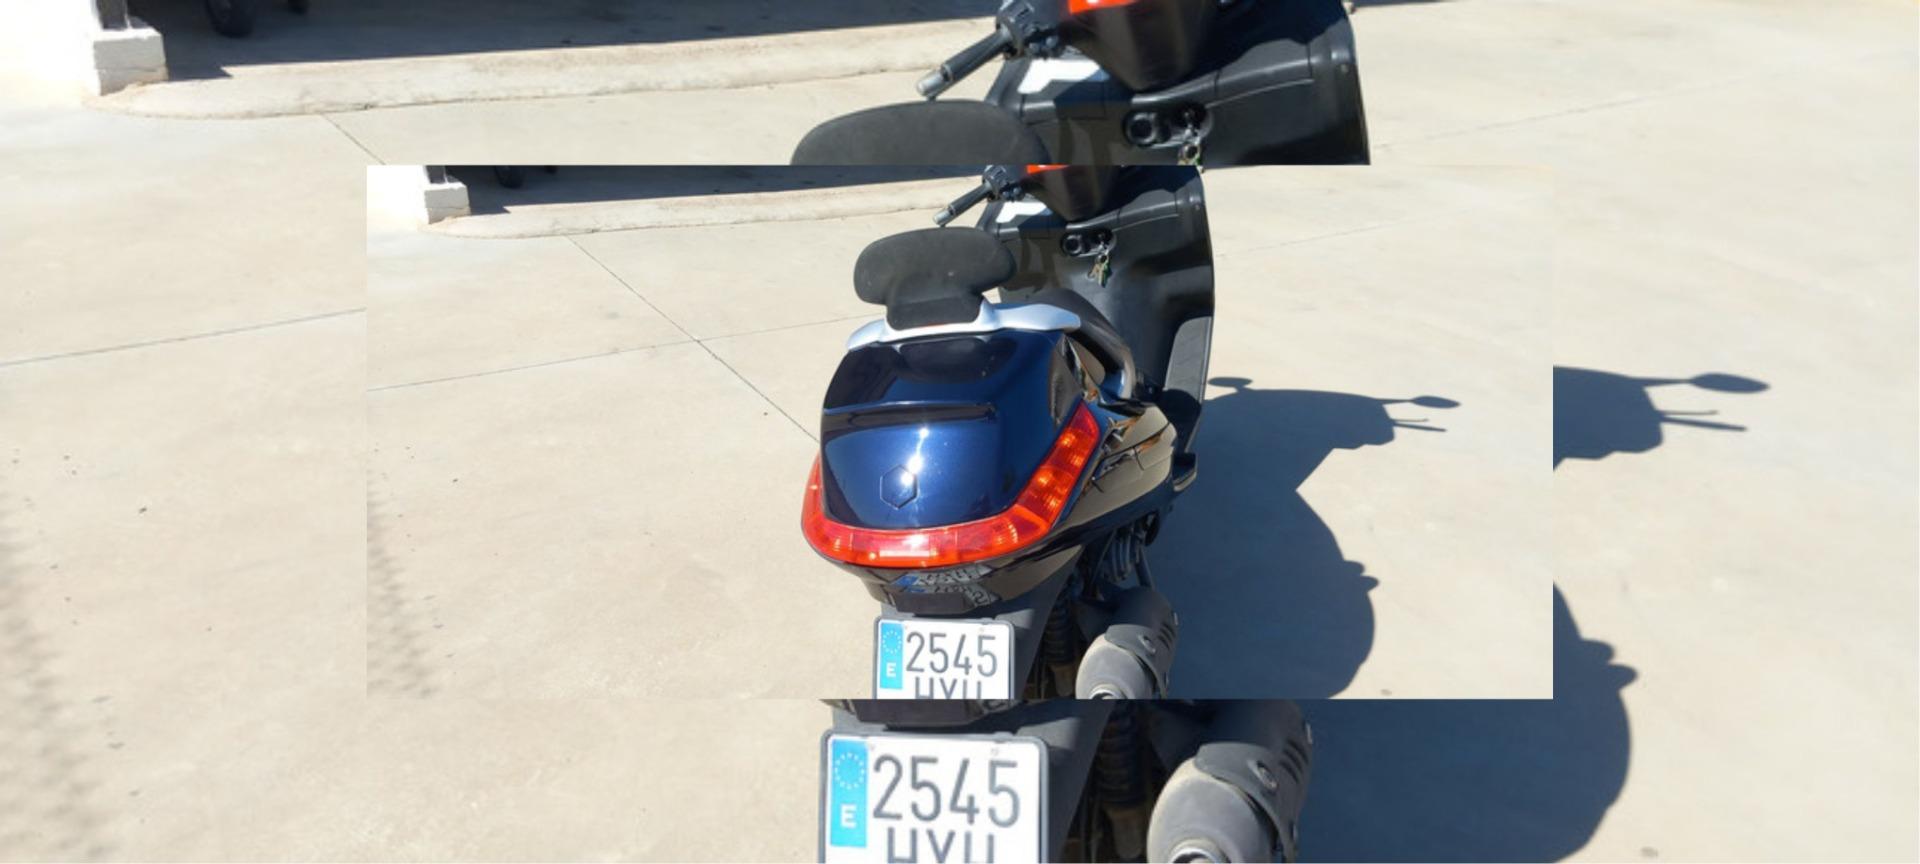 Foto de Scooters 125cc piaggio x-evo 2014